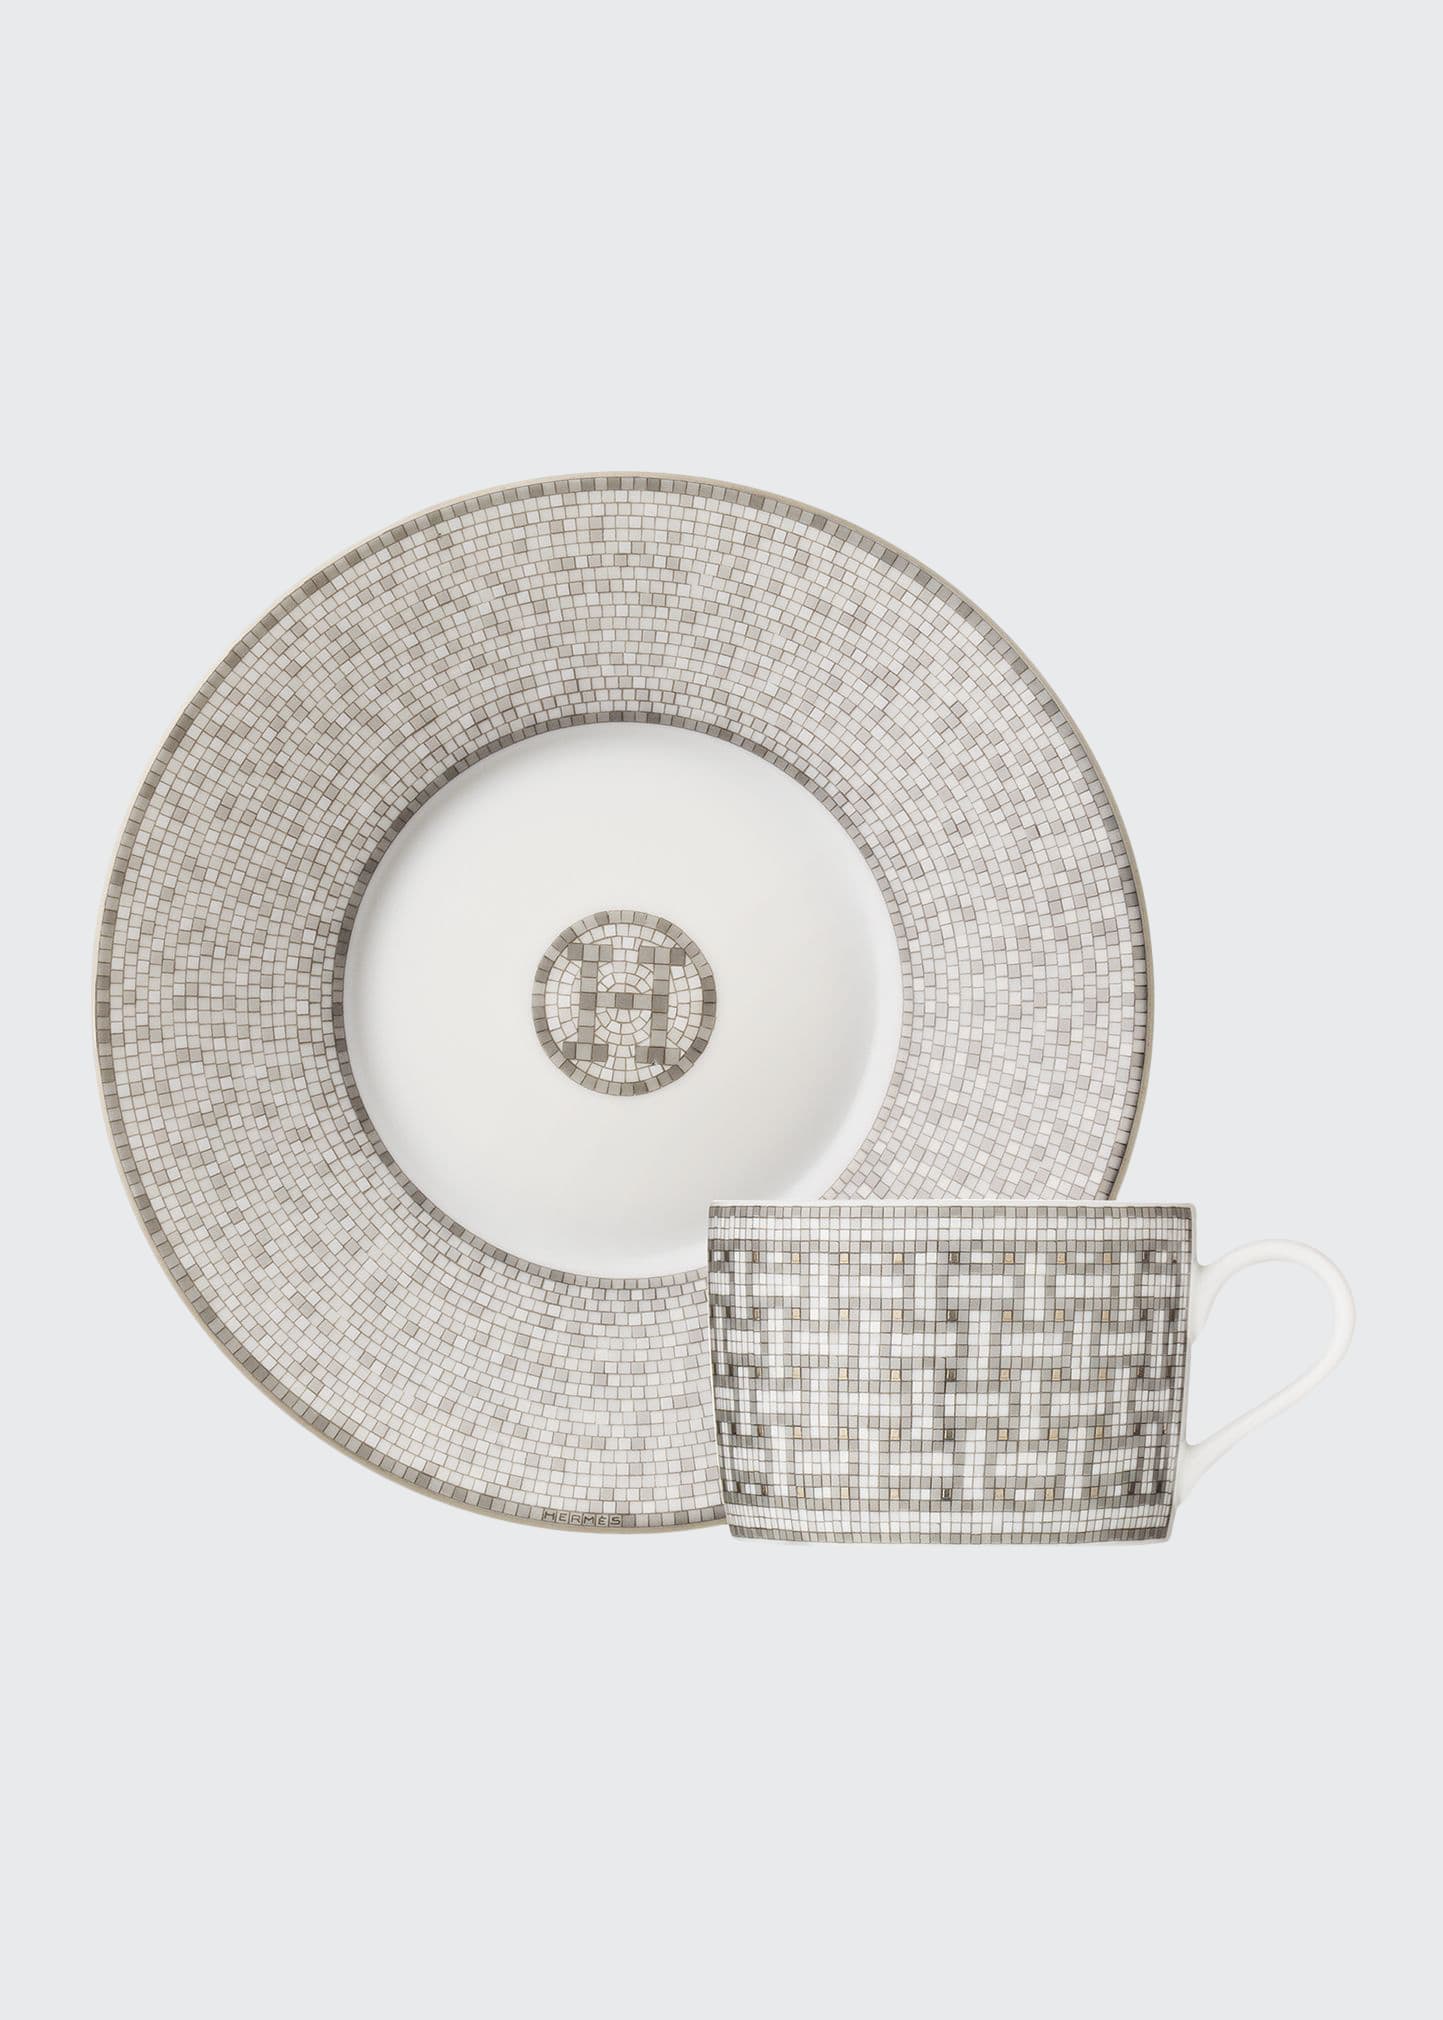 Hermès Mosaique au 24 Platinum Tea Cup & Saucer